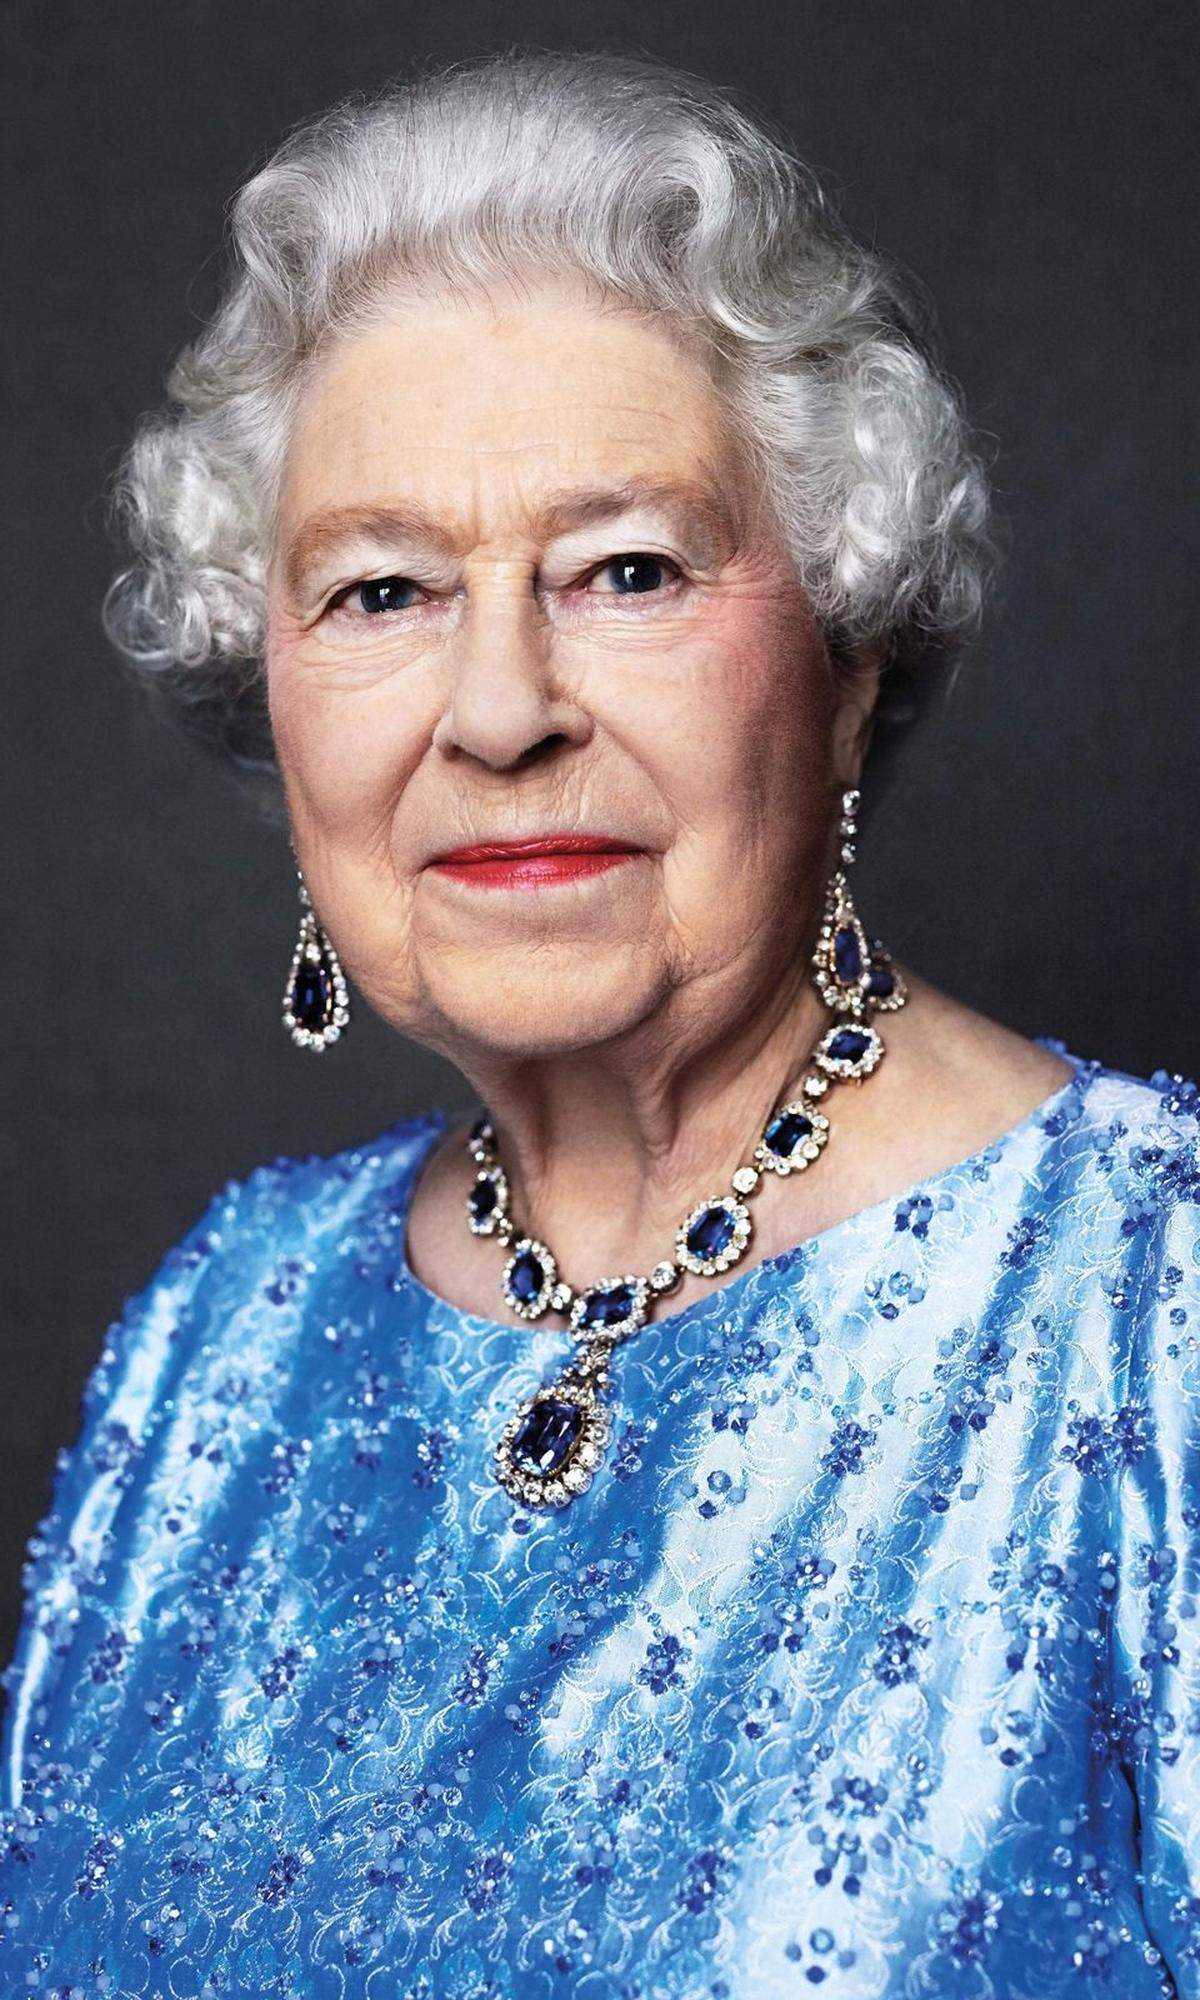 "Mein ganzes Leben, sollte es kurz oder lang werden", versprach die spätere Königin Elizabeth II. an ihrem 21. Geburtstag, wolle sie ihren Untertanen widmen. Jetzt ist die britische Königin bereits 65 Jahre auf dem Thron - und damit derzeit die am längsten amtierende Monarchin. Zum Feiern ist ihr aber wohl nicht zumute. Das Jubiläum an diesem Montag ist der Todestag ihres Vaters. Im folgenden ein paar Ausschnitte ihrer Regentschaft, wir beginnen bei A wie "annus horribilis".